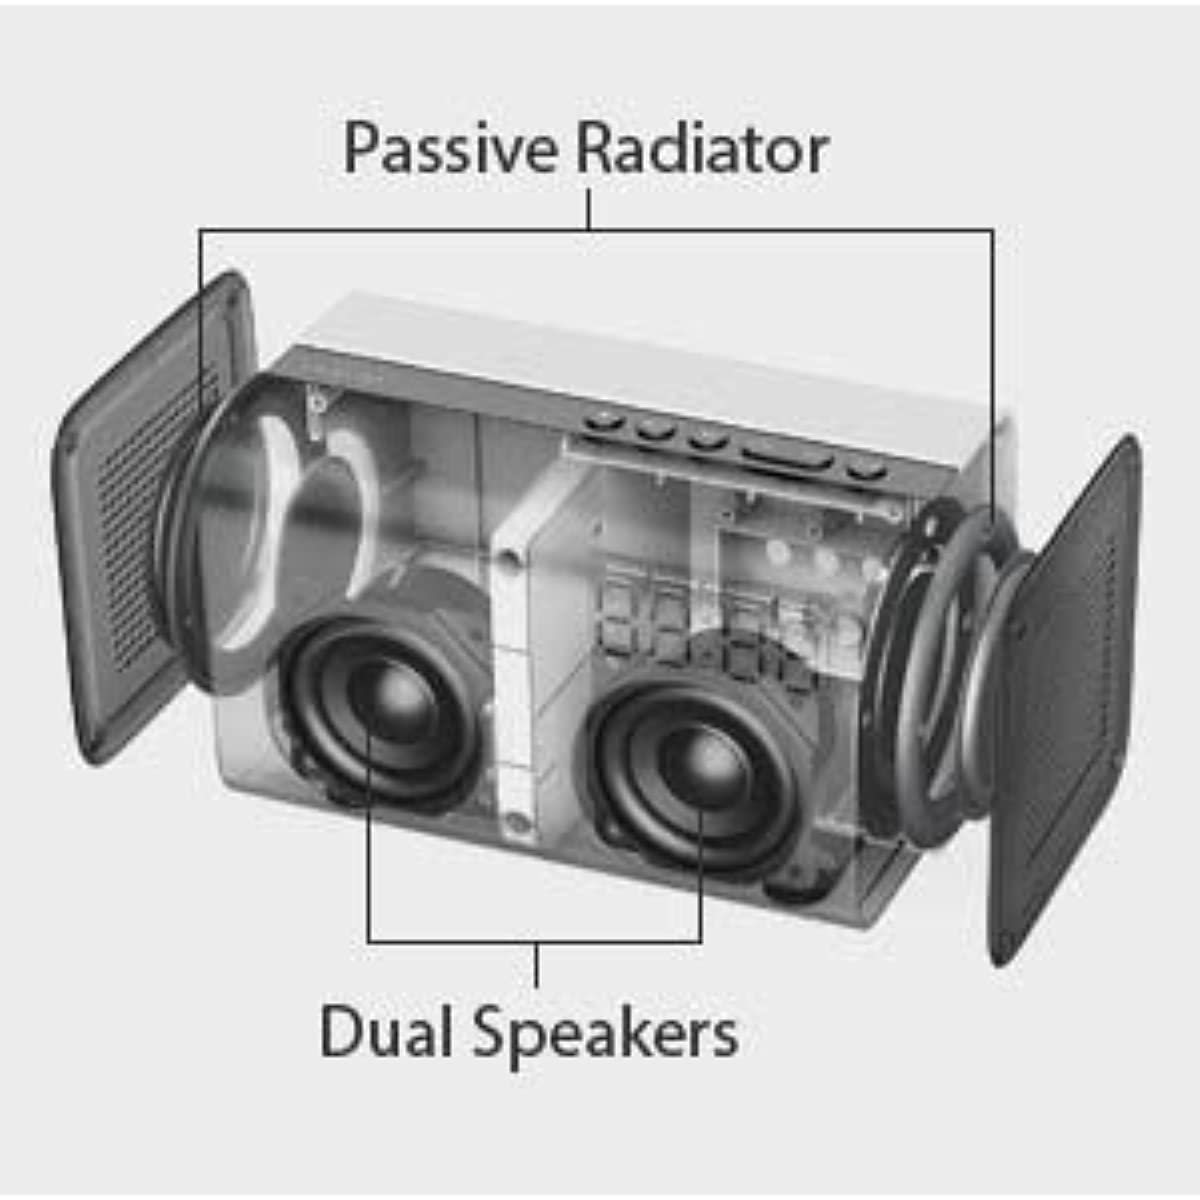 ZINMARK E3 Bluetooth WiFi Speaker, Cabinets for Loudspeakers